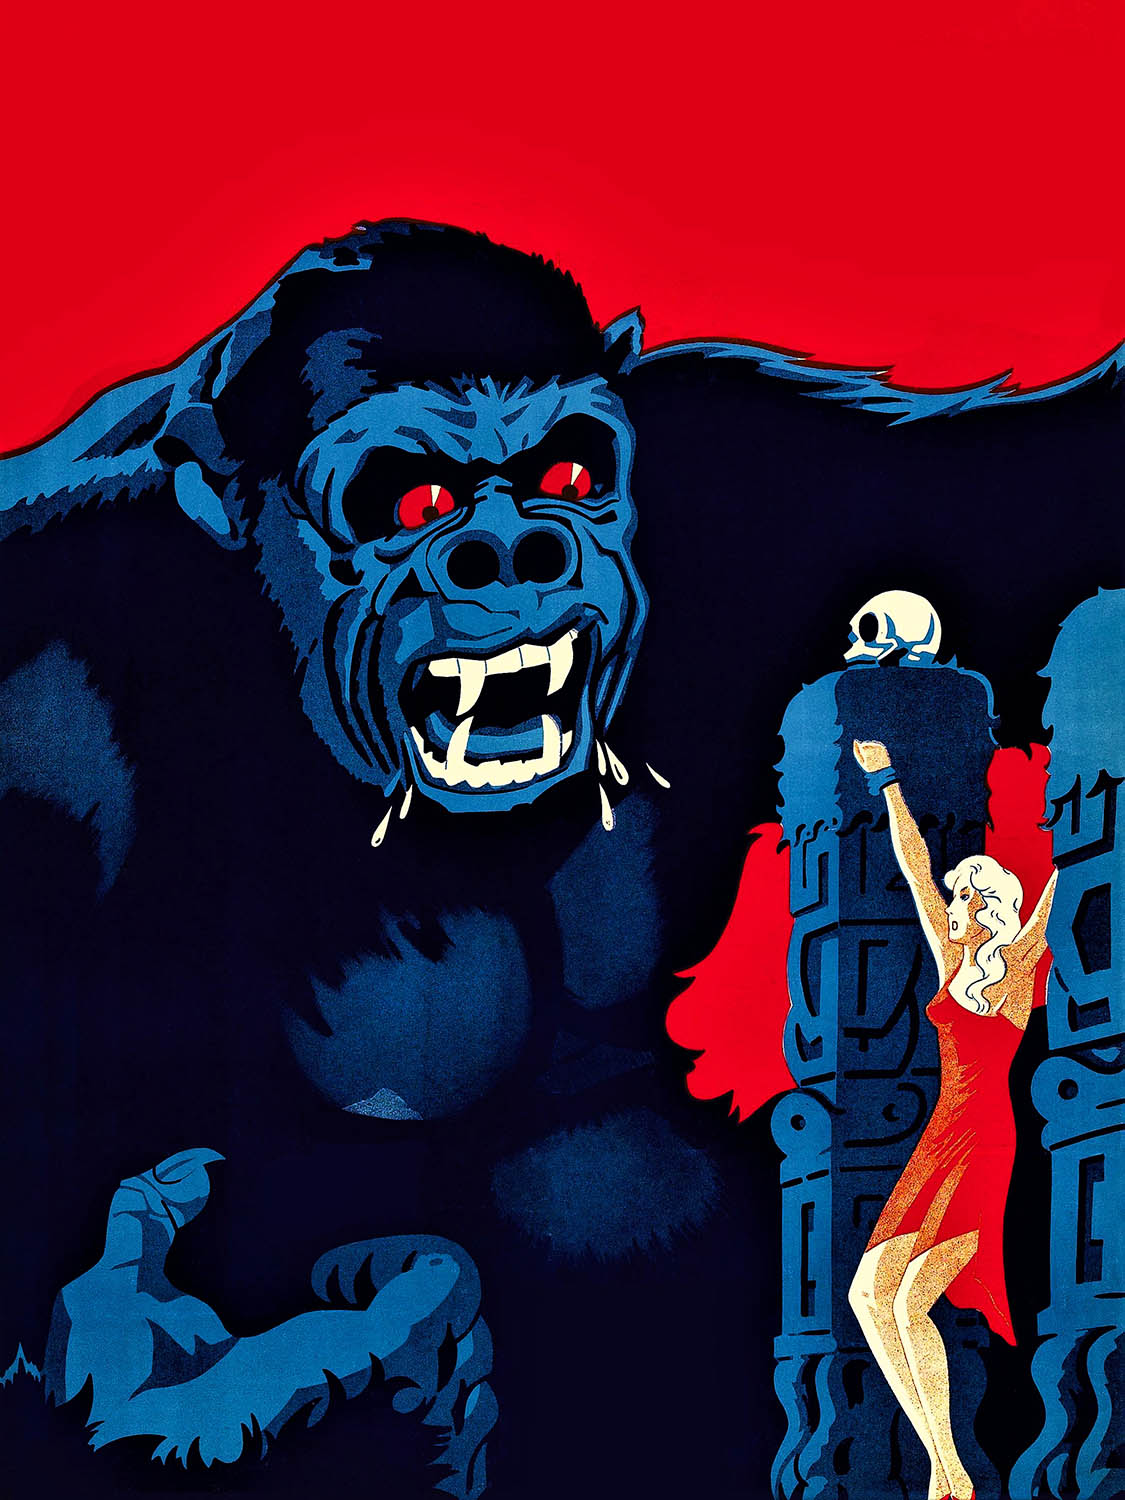 Affiche de film King Kong par Anonyme, 1933